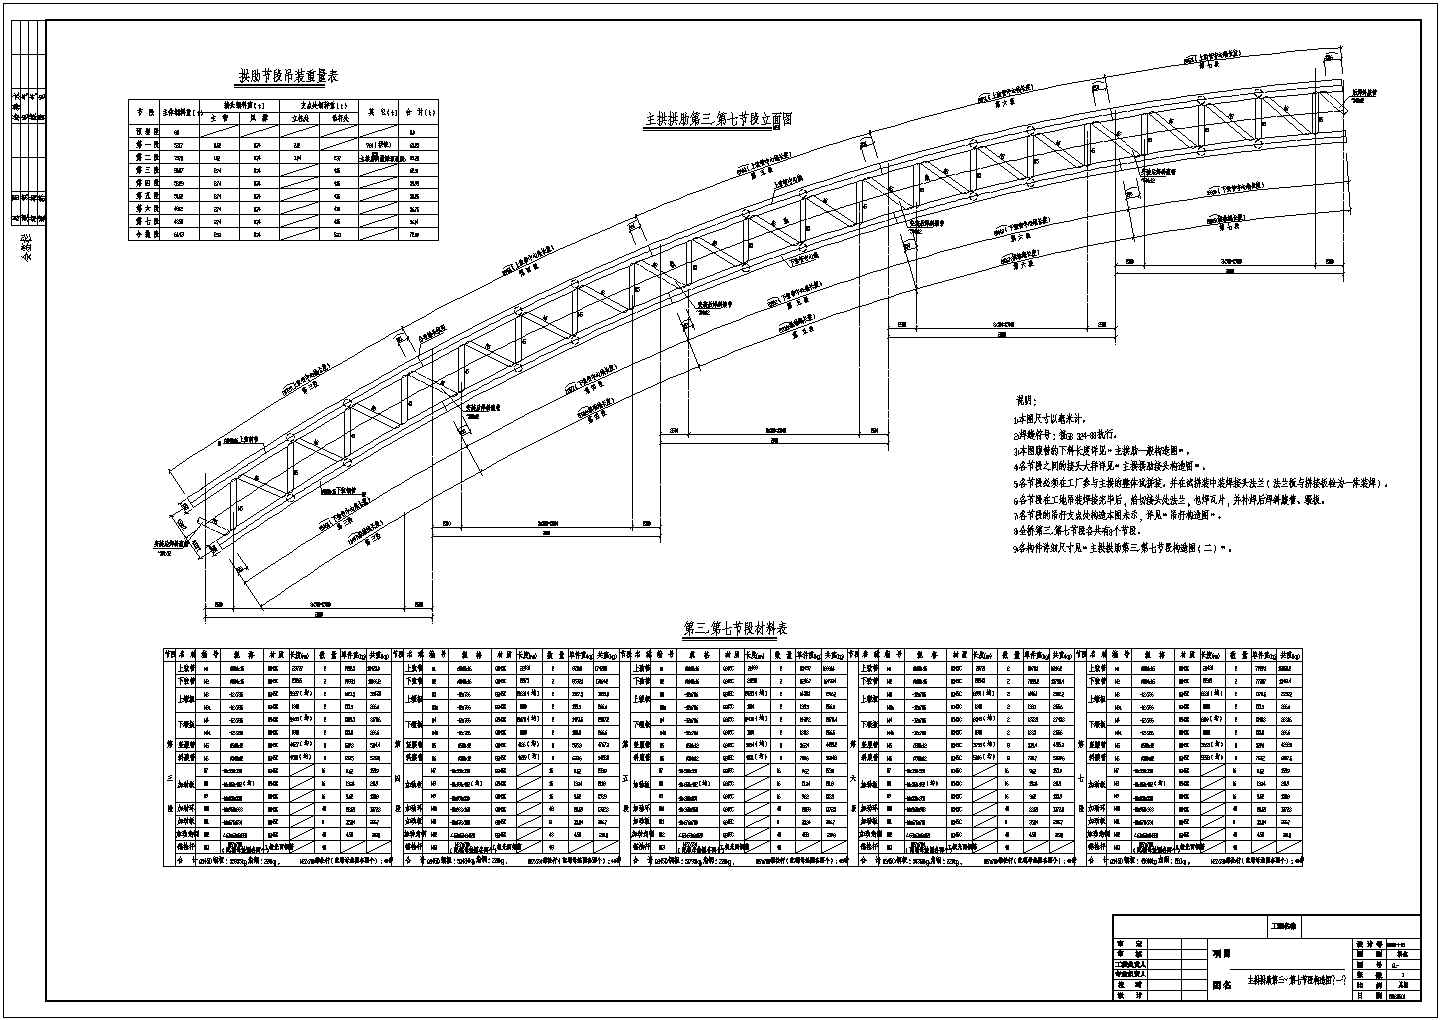 380m中承式钢管混凝土系杆拱桥主拱肋段构造节点详图设计